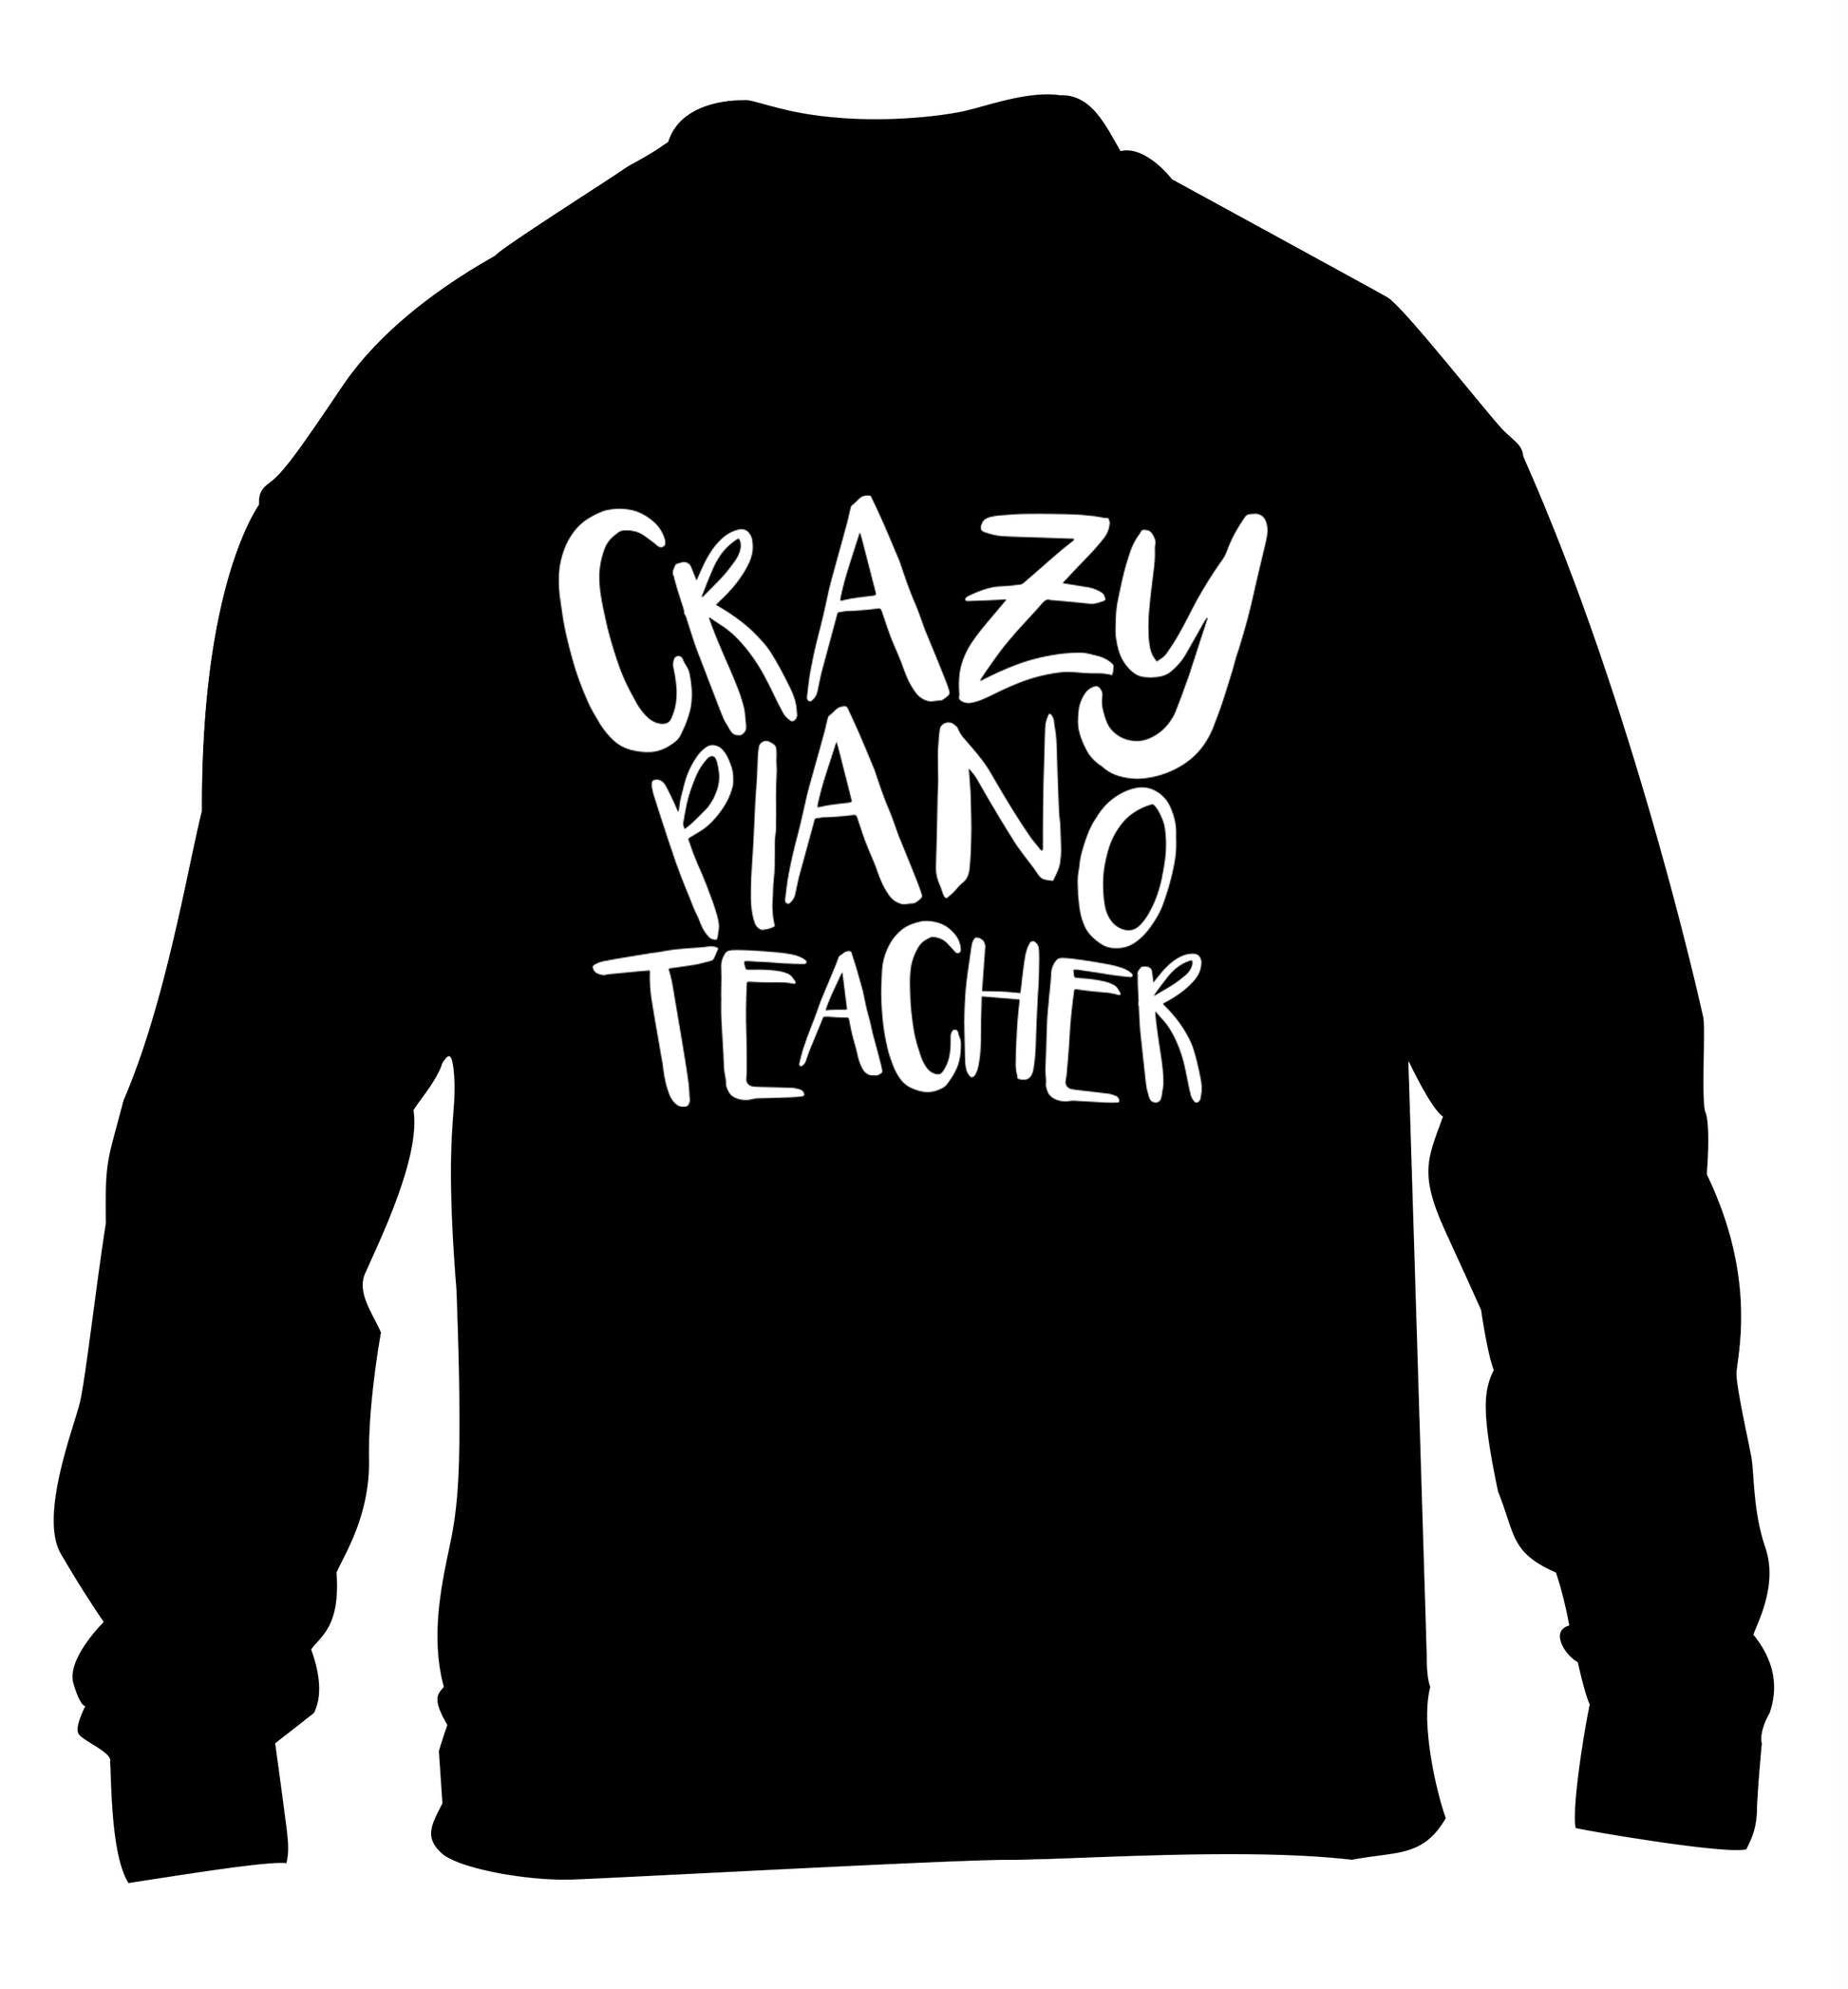 Crazy piano teacher children's black sweater 12-13 Years